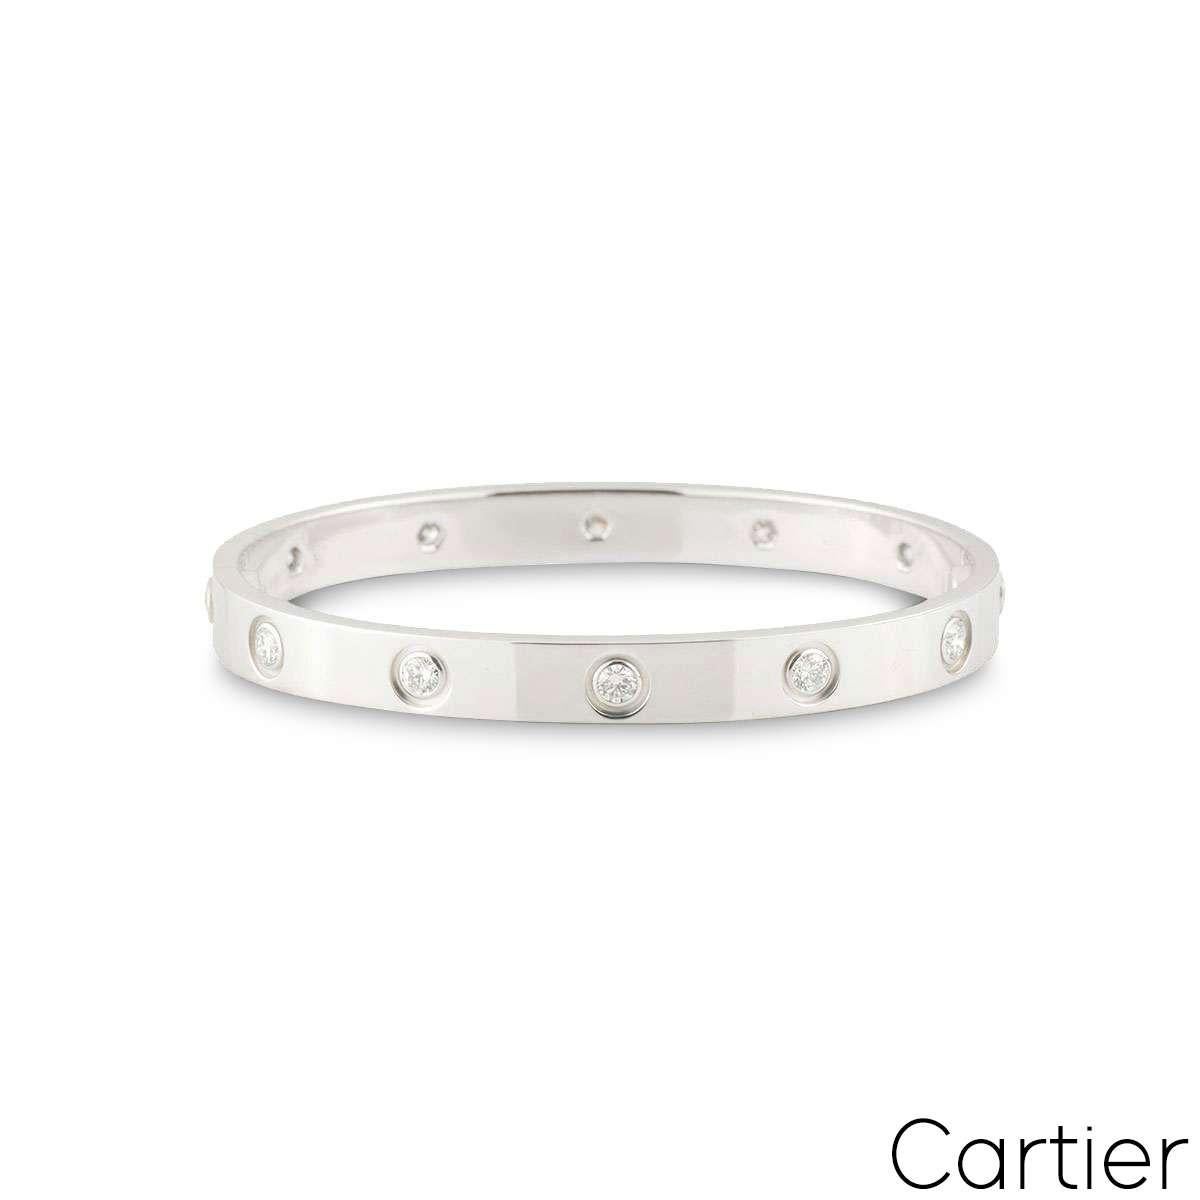 Ein Cartier-Armband aus 18 Karat Weißgold mit Diamanten aus der Collection'S Love. Das Armband ist mit 10 runden Diamanten im Brillantschliff besetzt, die am äußeren Rand in einer Rubover-Fassung von insgesamt 0,96 ct. umlaufen. Das Armband hat die